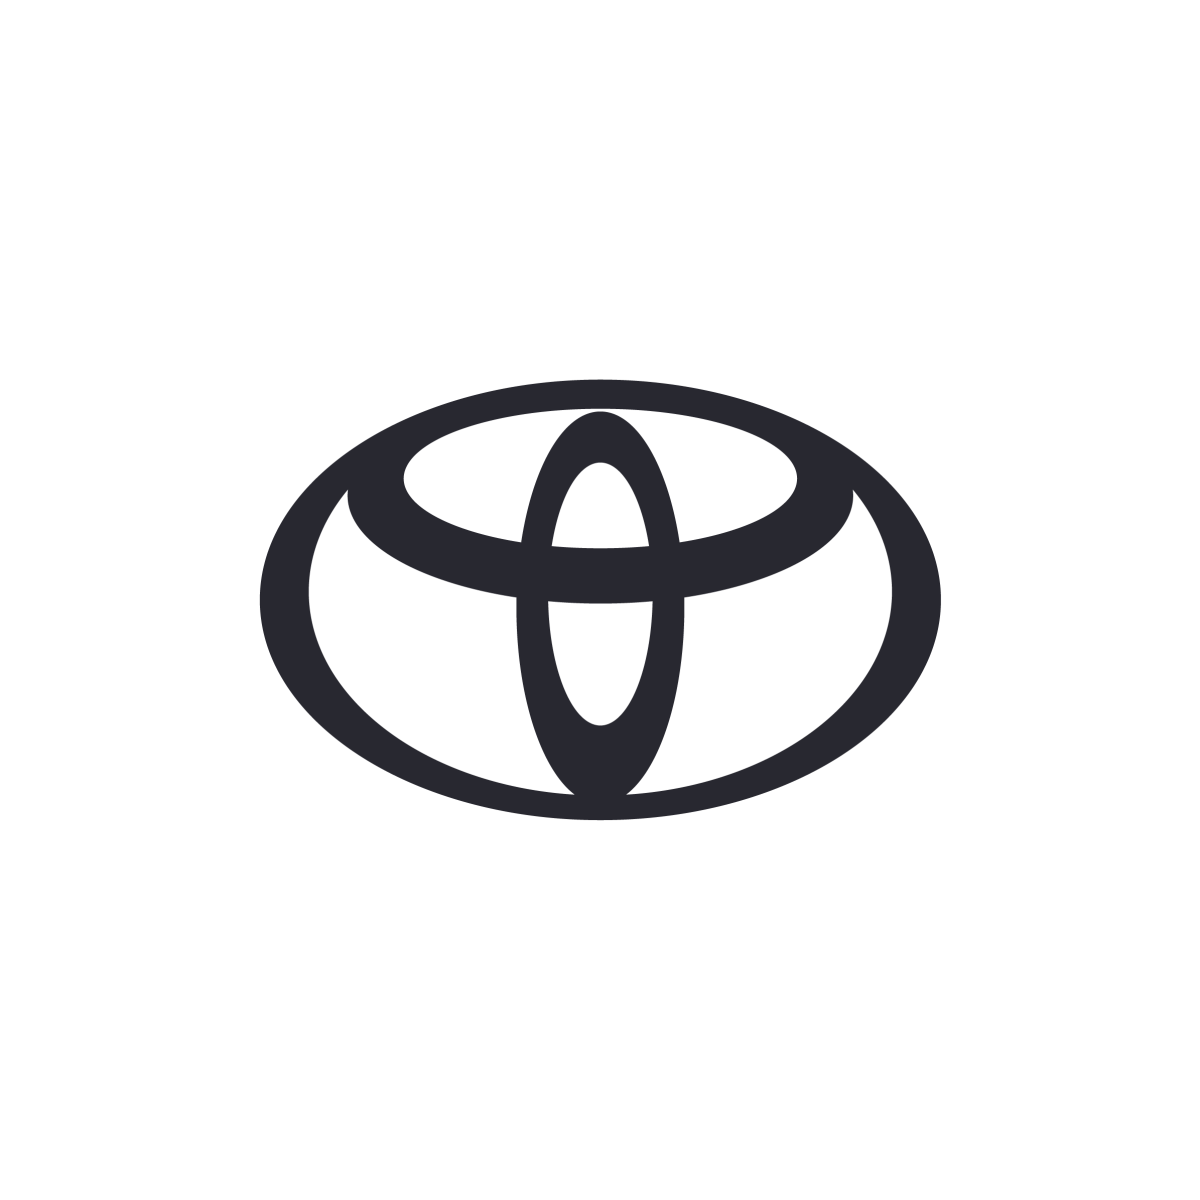 TME Toyota Ellipse Mono GREY_EXCLUSION (2)